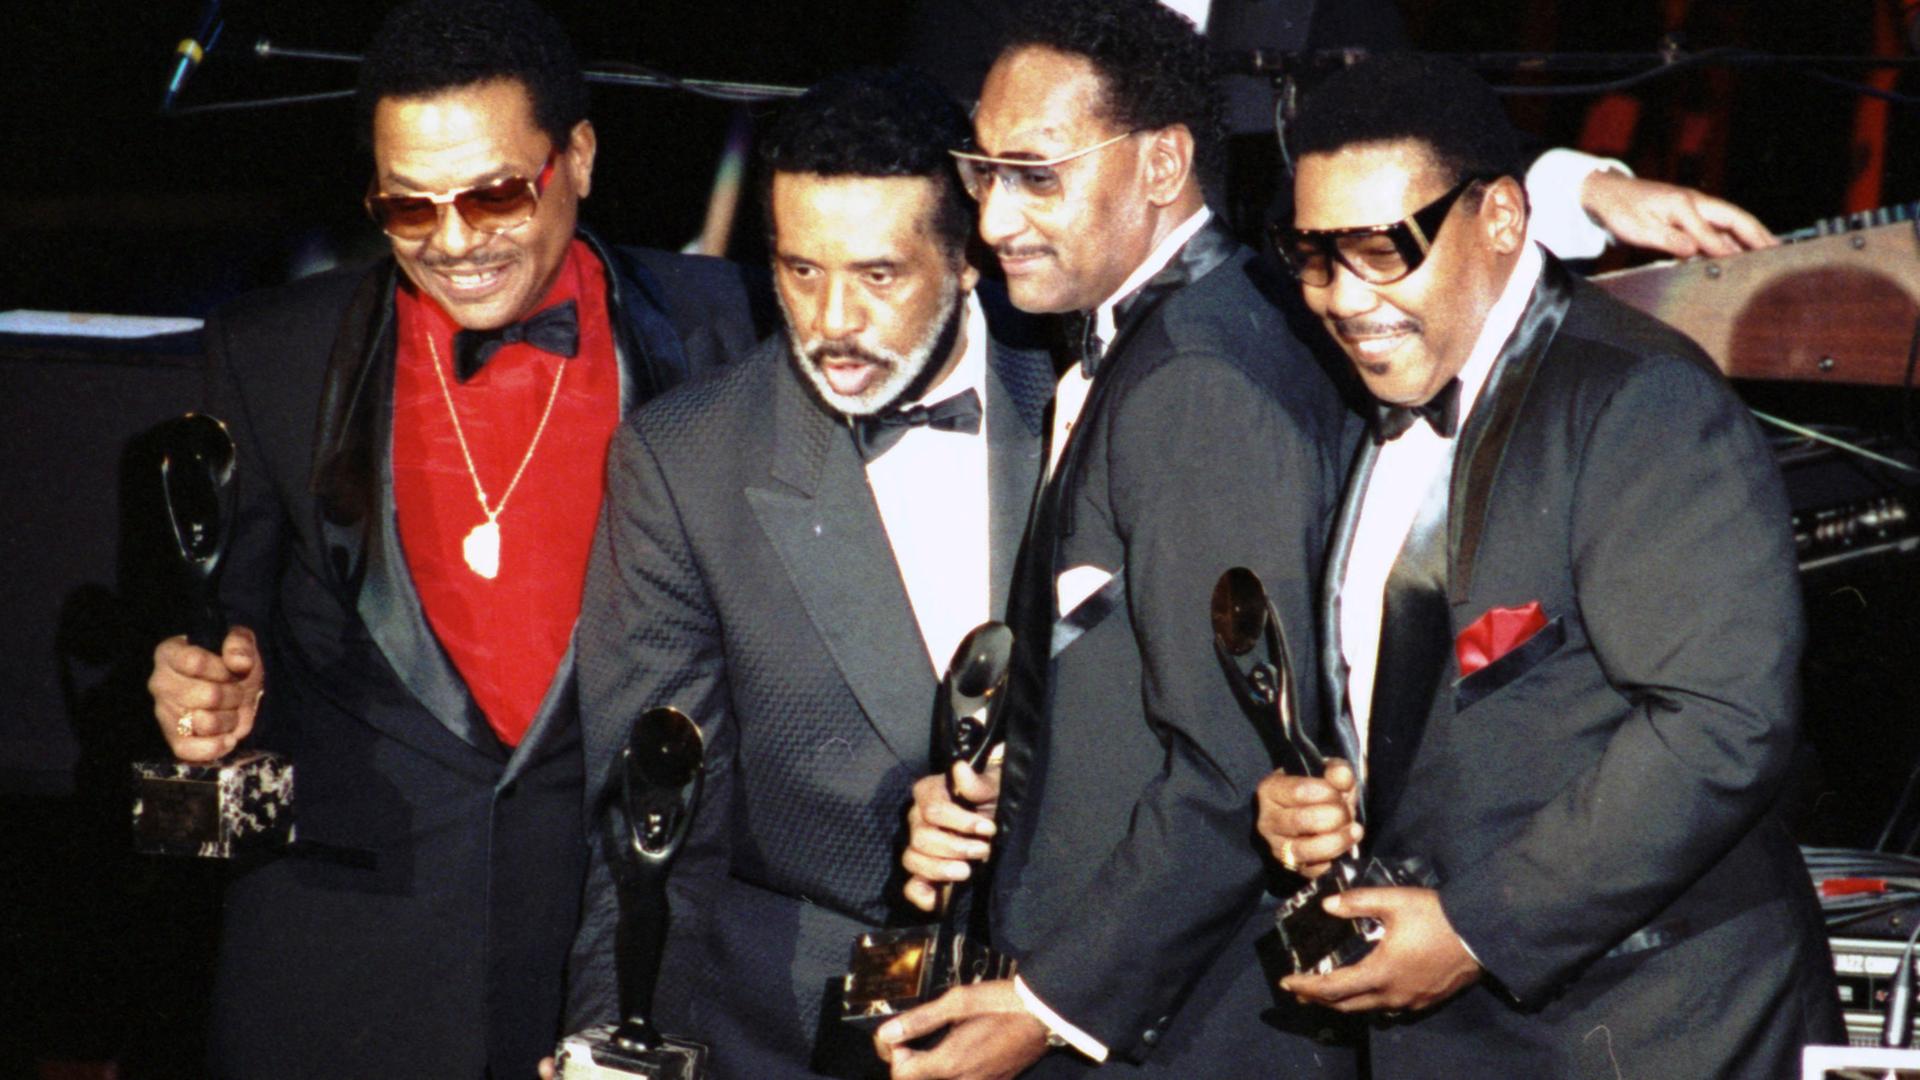 Das Bild zeigt die vier Mitglieder der Band Four Tops mit festlichen Anzügen und Auszeichnungen auf einer Bühne, sie freuen sich und lächeln Richtung Publikum.